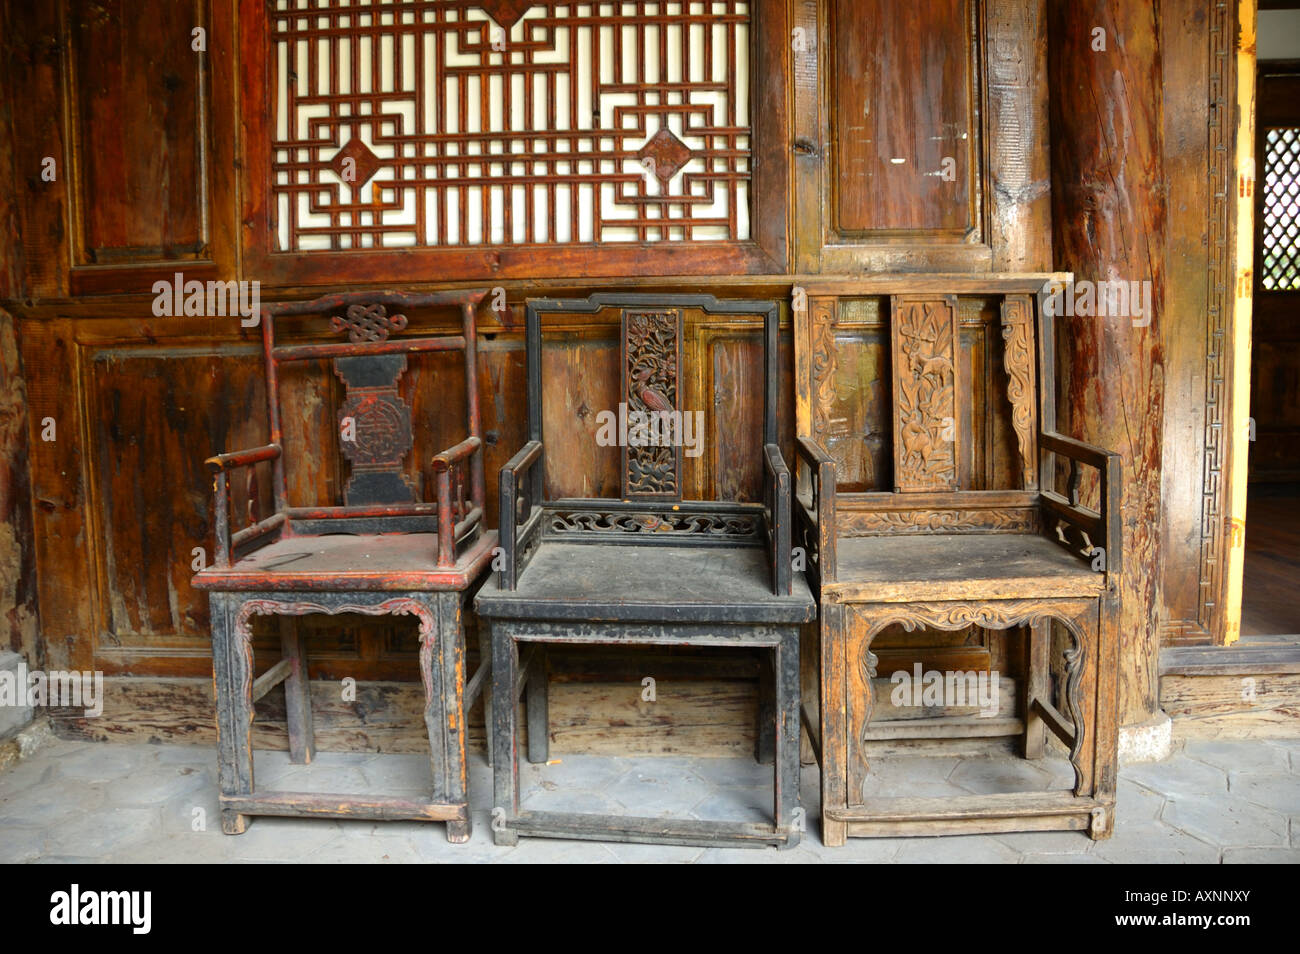 Traditionelle hölzerne Stühle in einer lokalen Residenz. Lijiang, Yunnan, China. Stockfoto